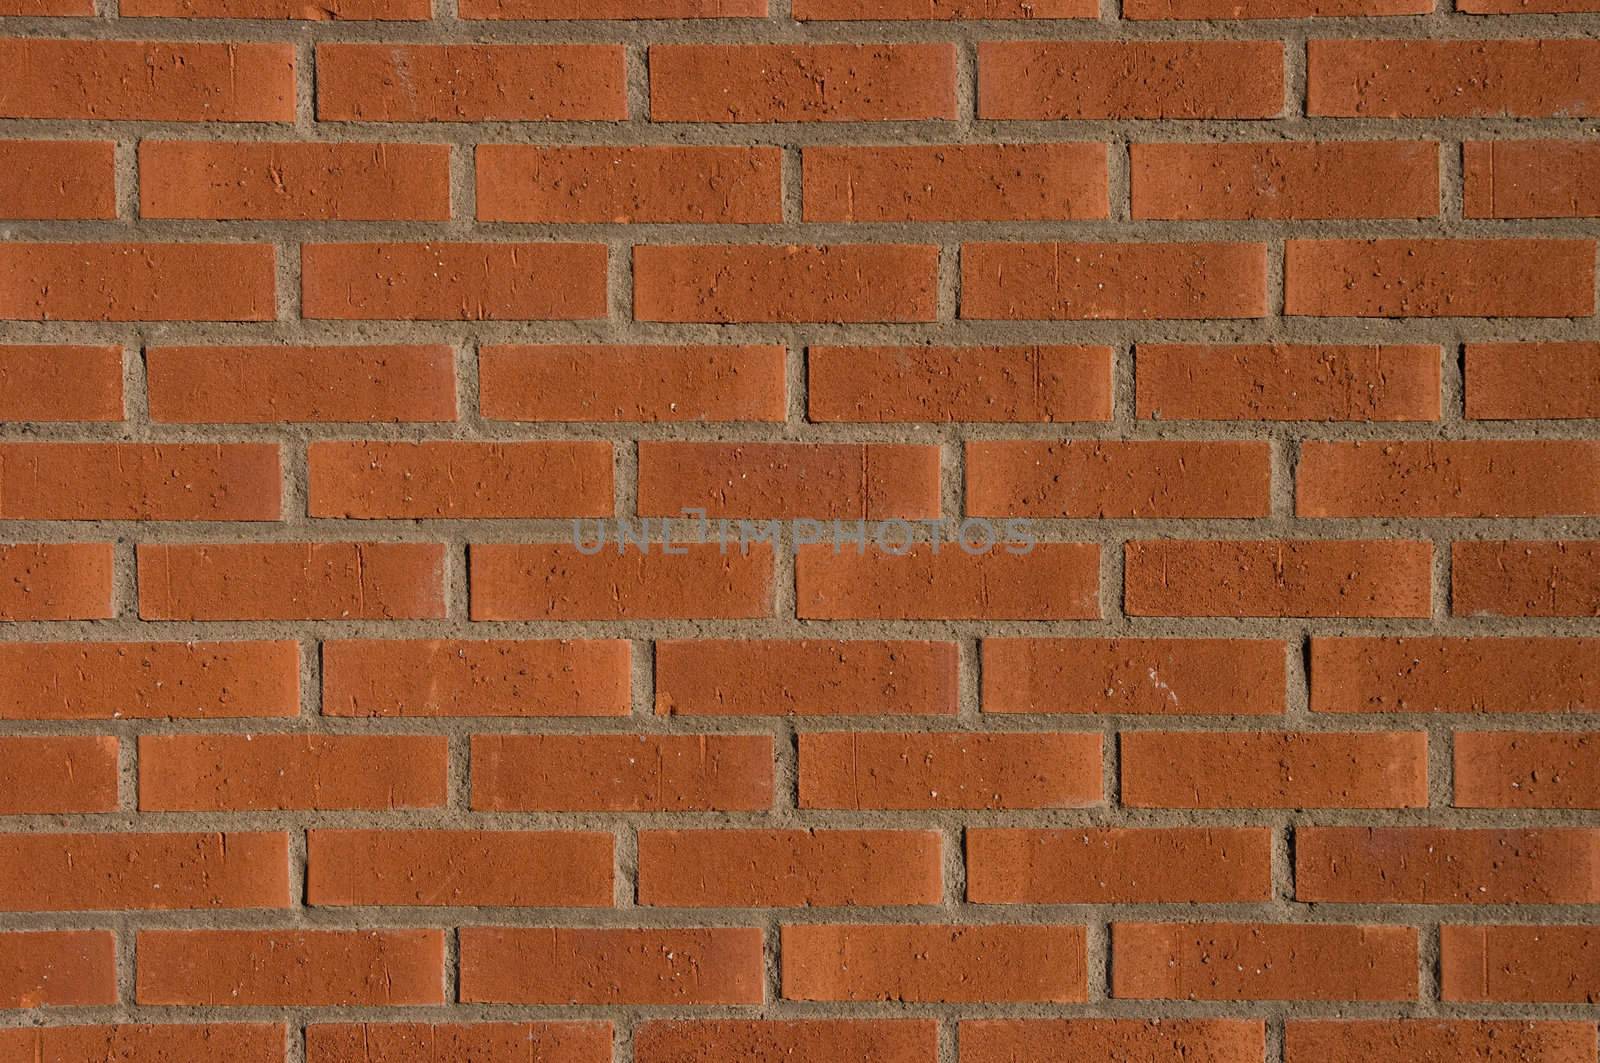 Brick Wall by peterboxy